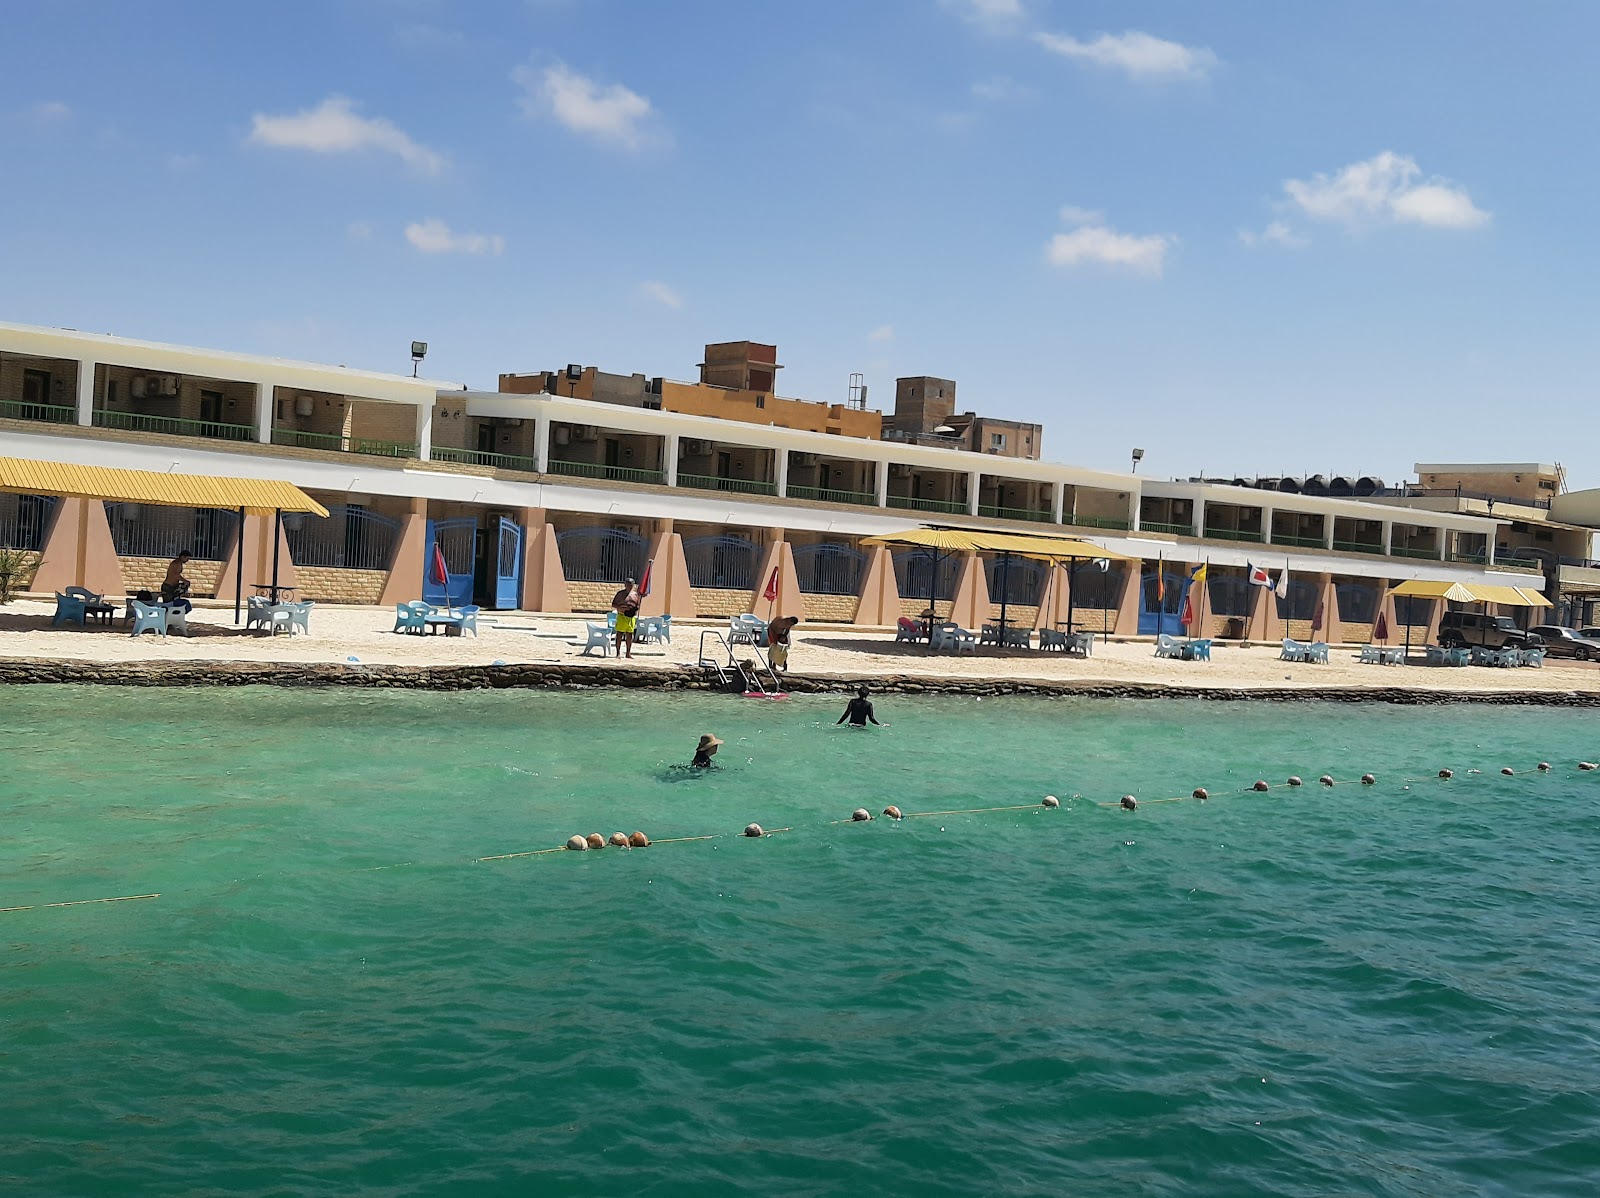 Suez Canal Authority Camp Beach'in fotoğrafı doğrudan plaj ile birlikte